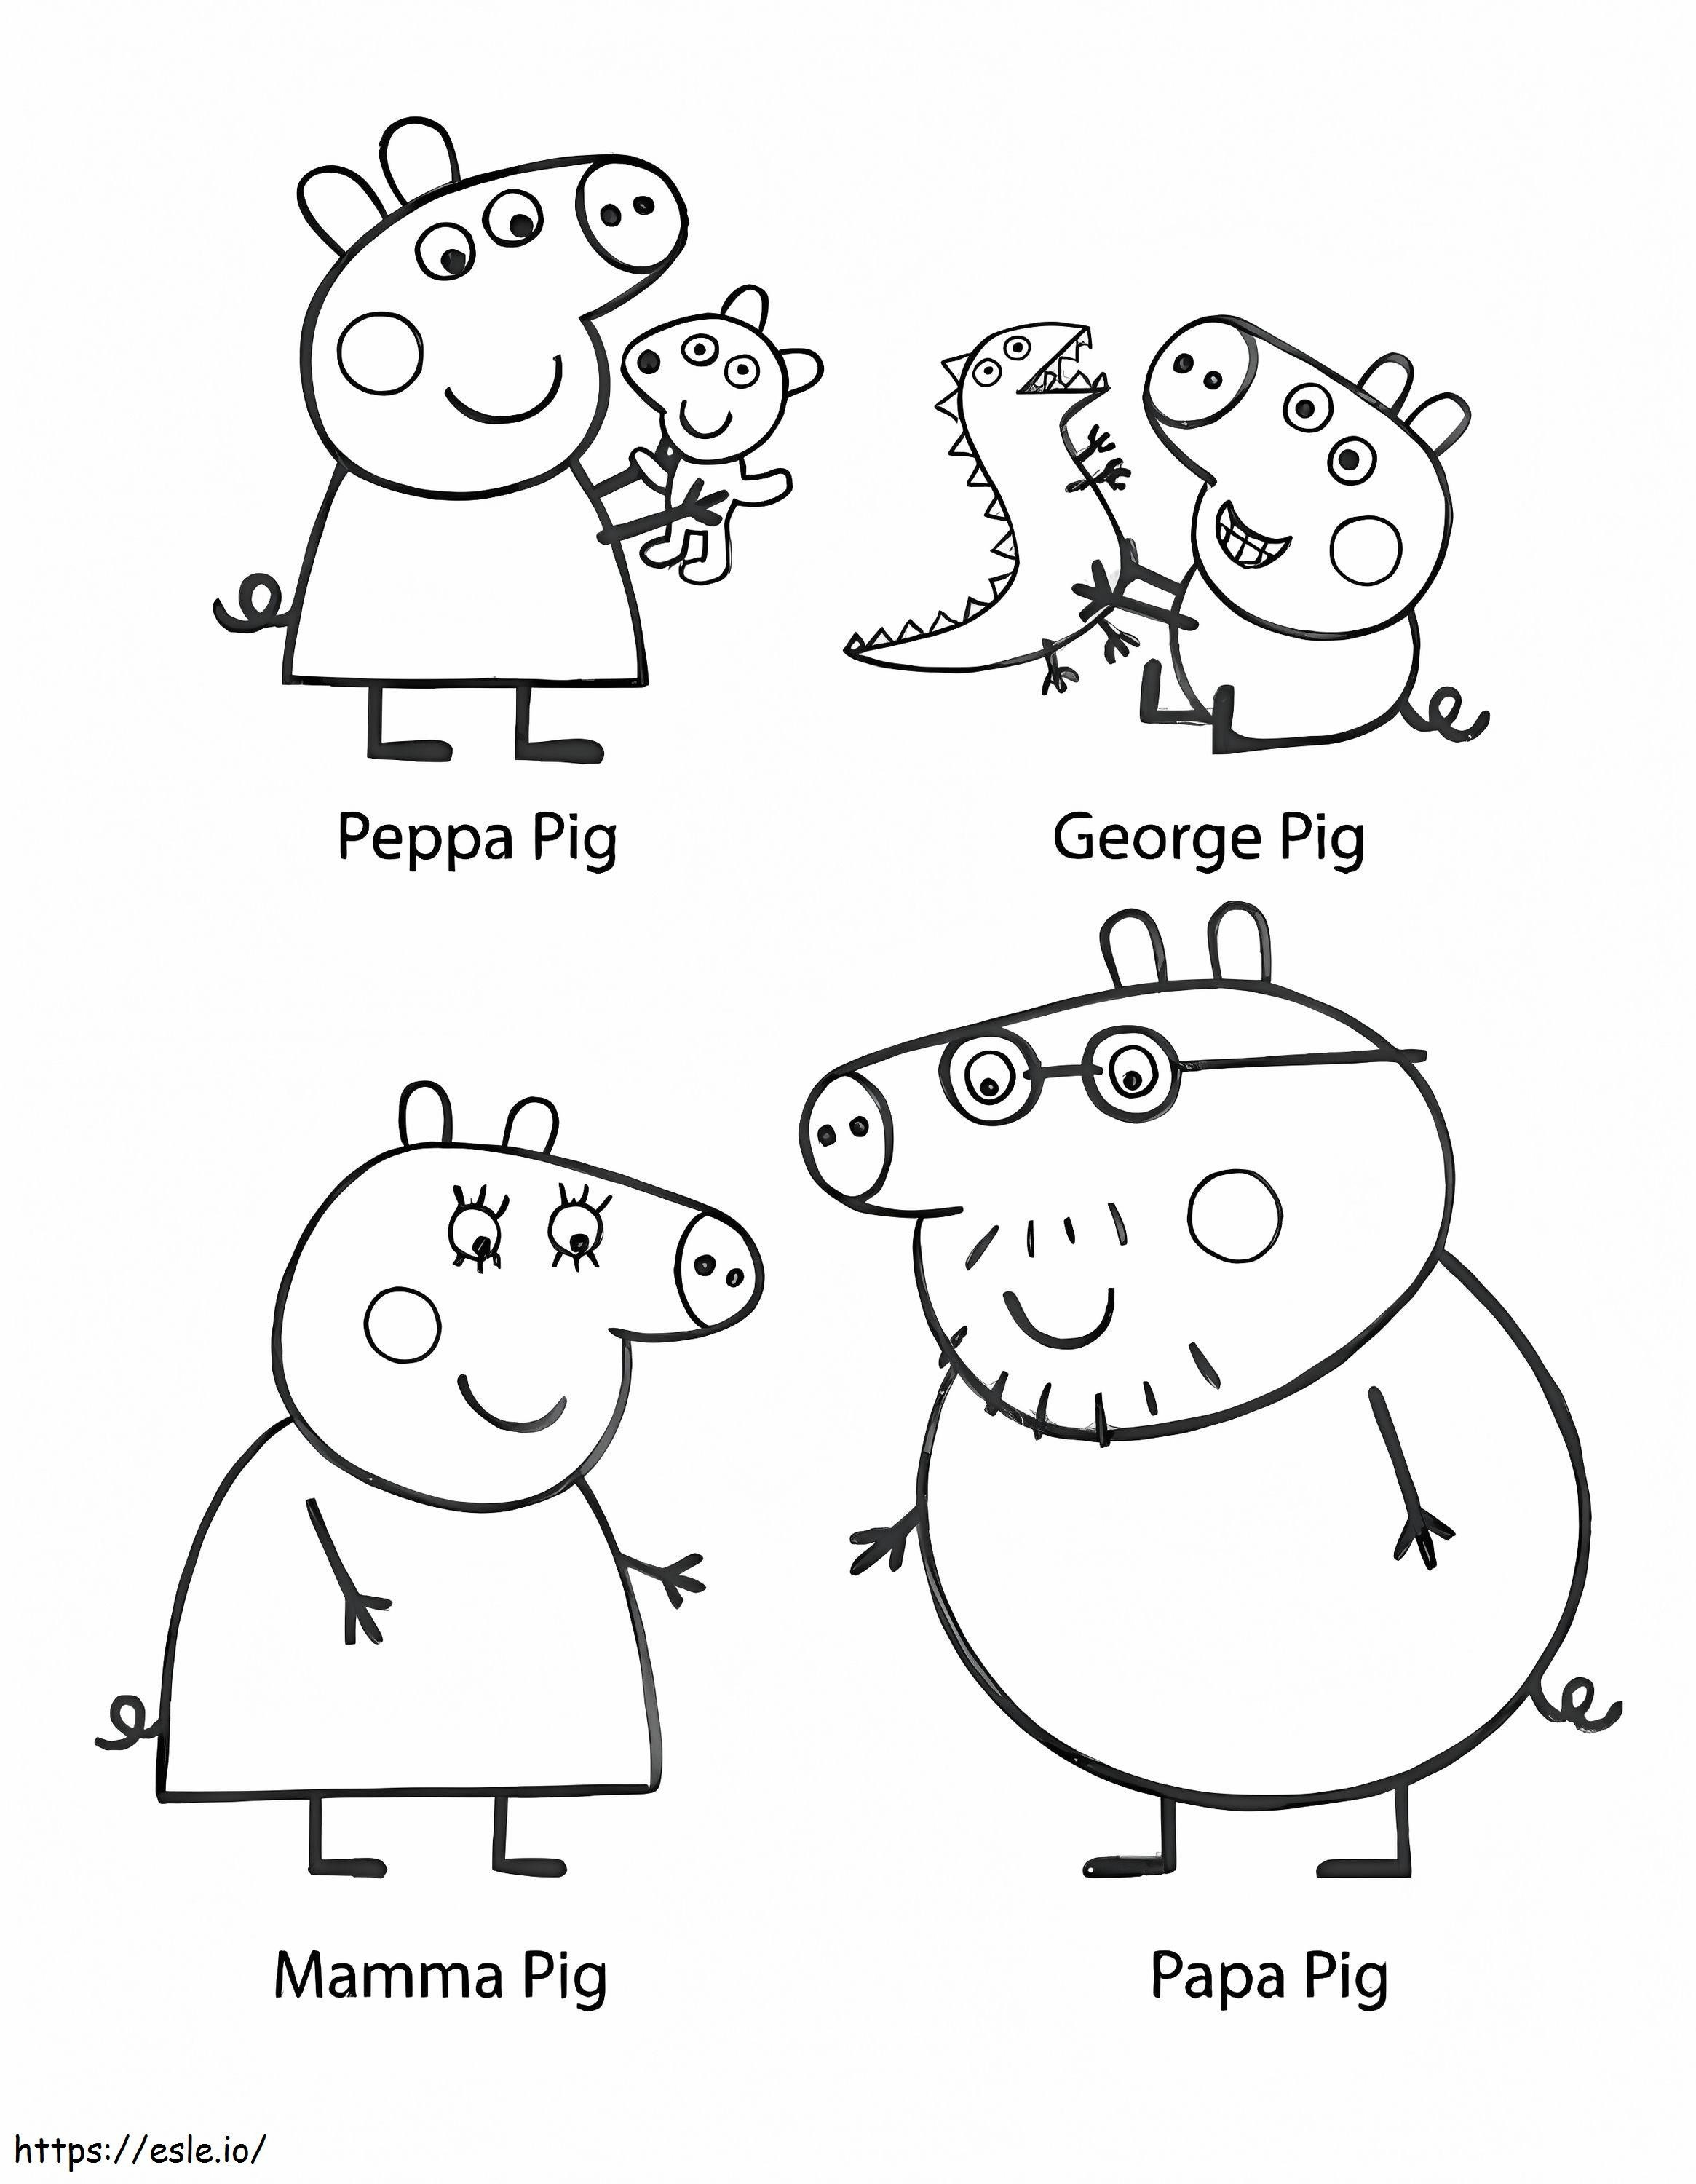 Charaktere der Peppa Pig-Familie ausmalbilder